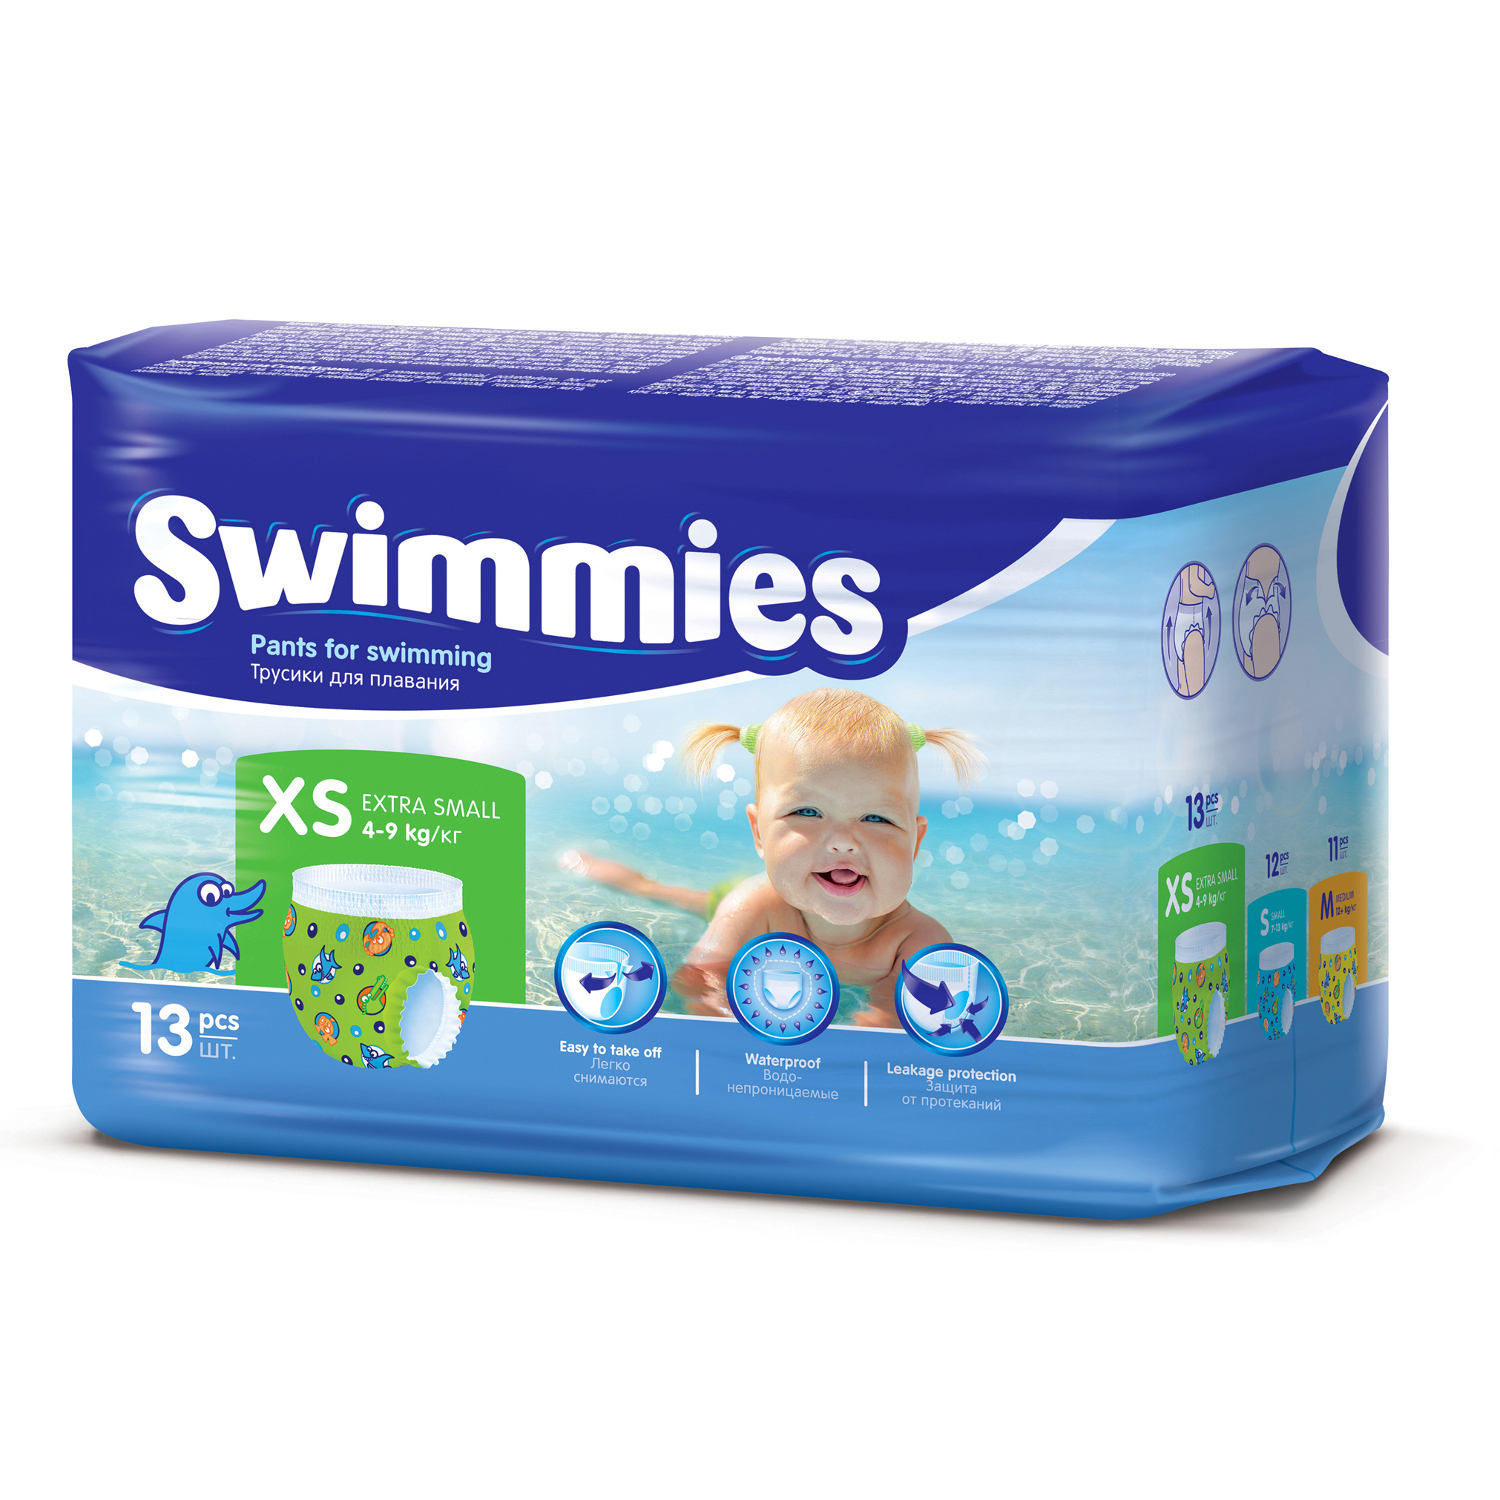 Детские одноразовые трусики для плаванья Swimmies 4-9 кг (X-Small) - 13 шт